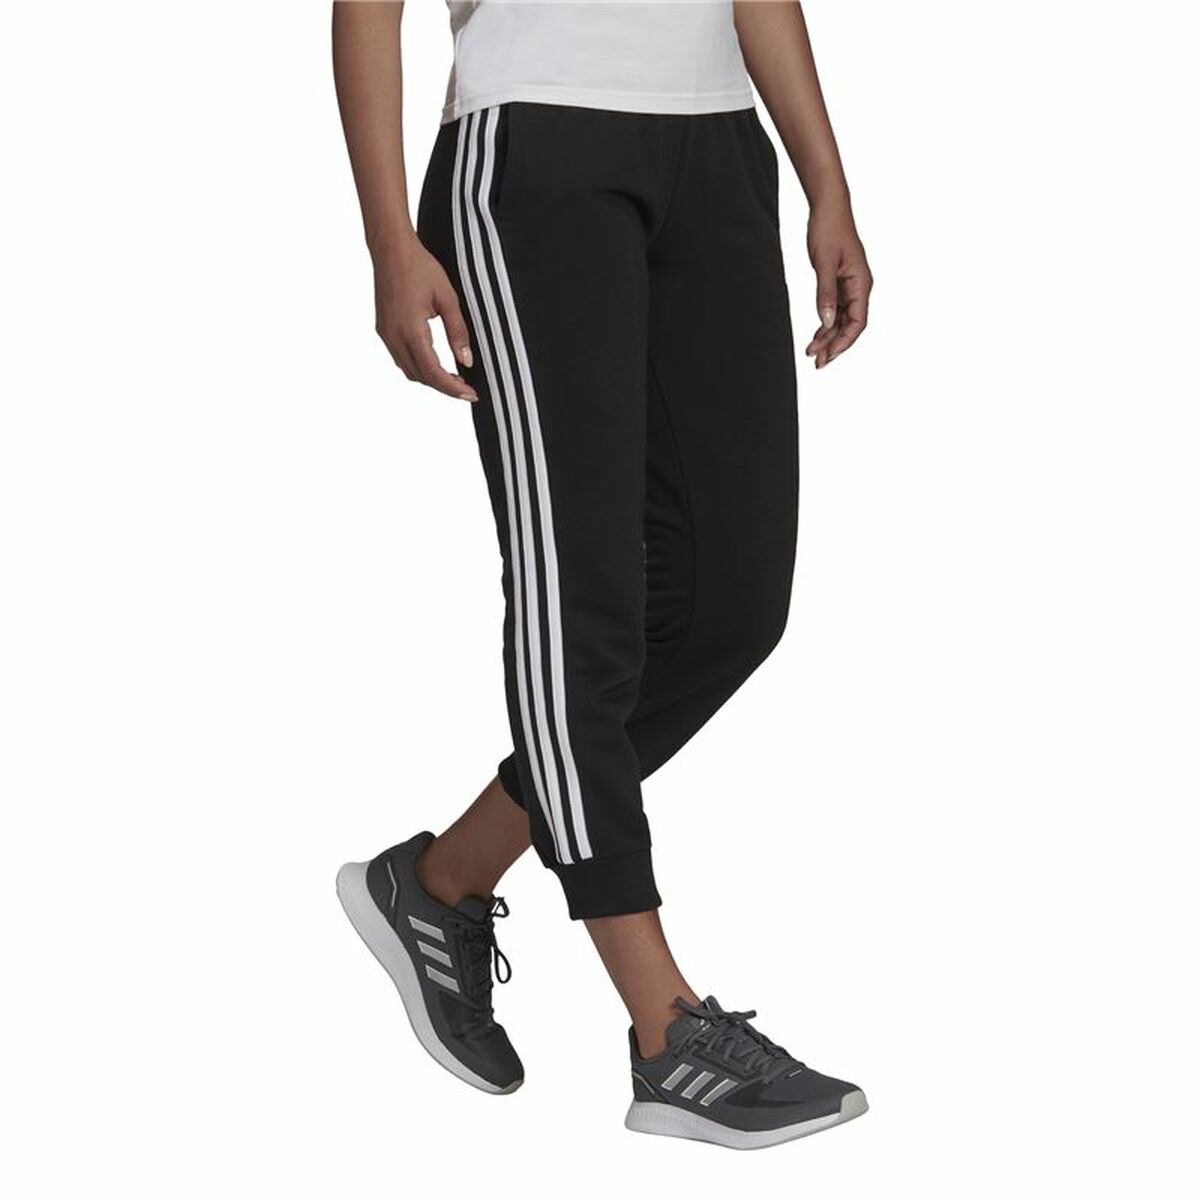 Длинные спортивные штаны Adidas Essentials Studio Lounge Cuffed 3 Stripes Женщина Чёрный